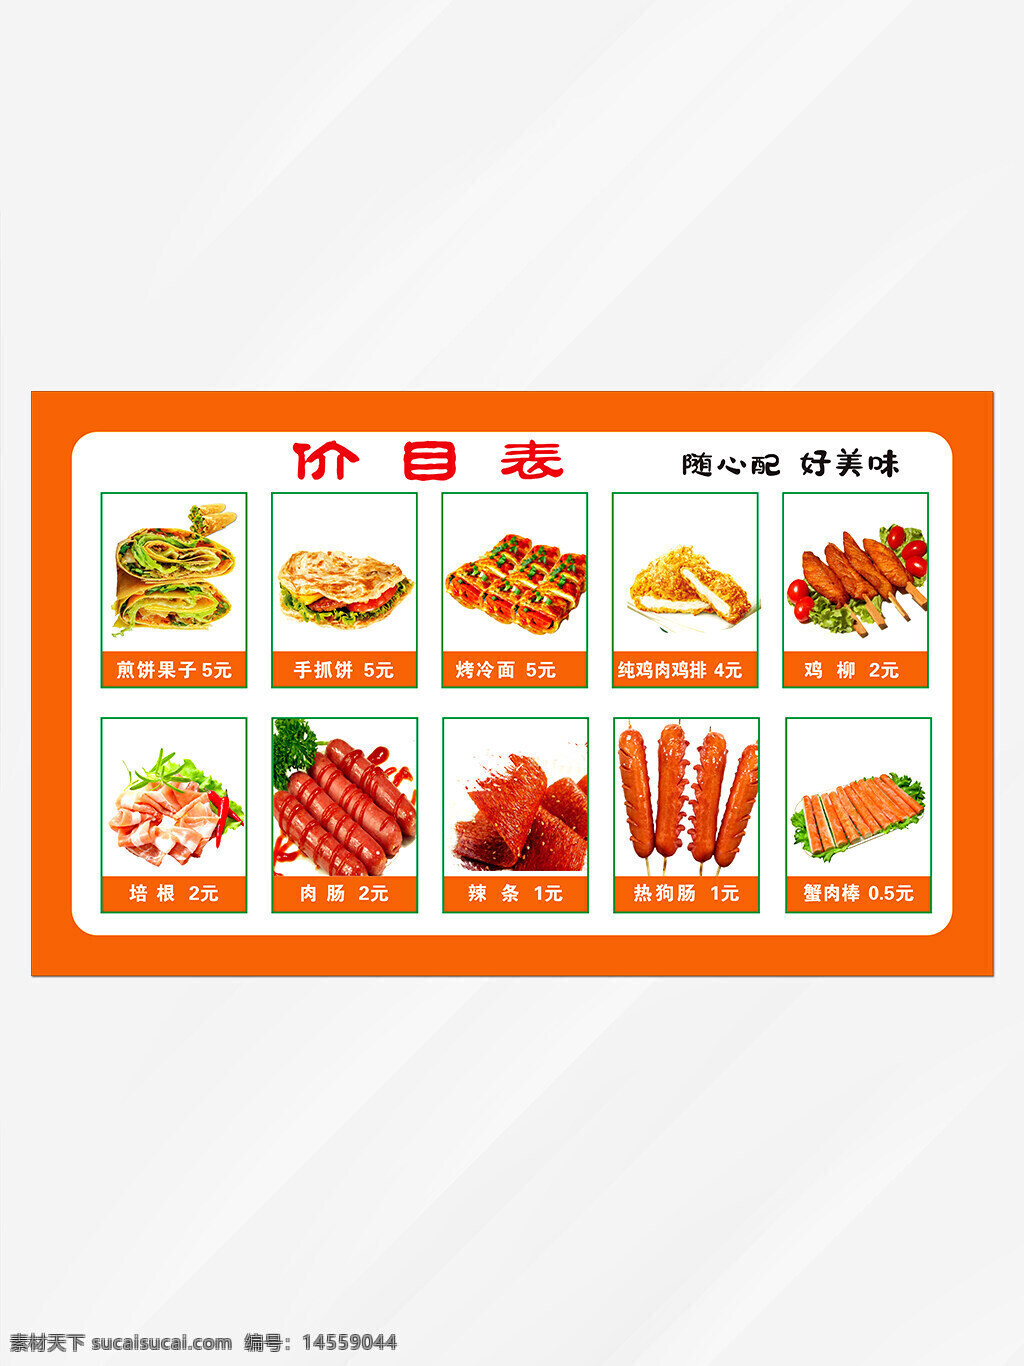 中式菜谱 菜单 菜品照片 古风 特色菜菜单 高档菜 中餐中国风菜谱